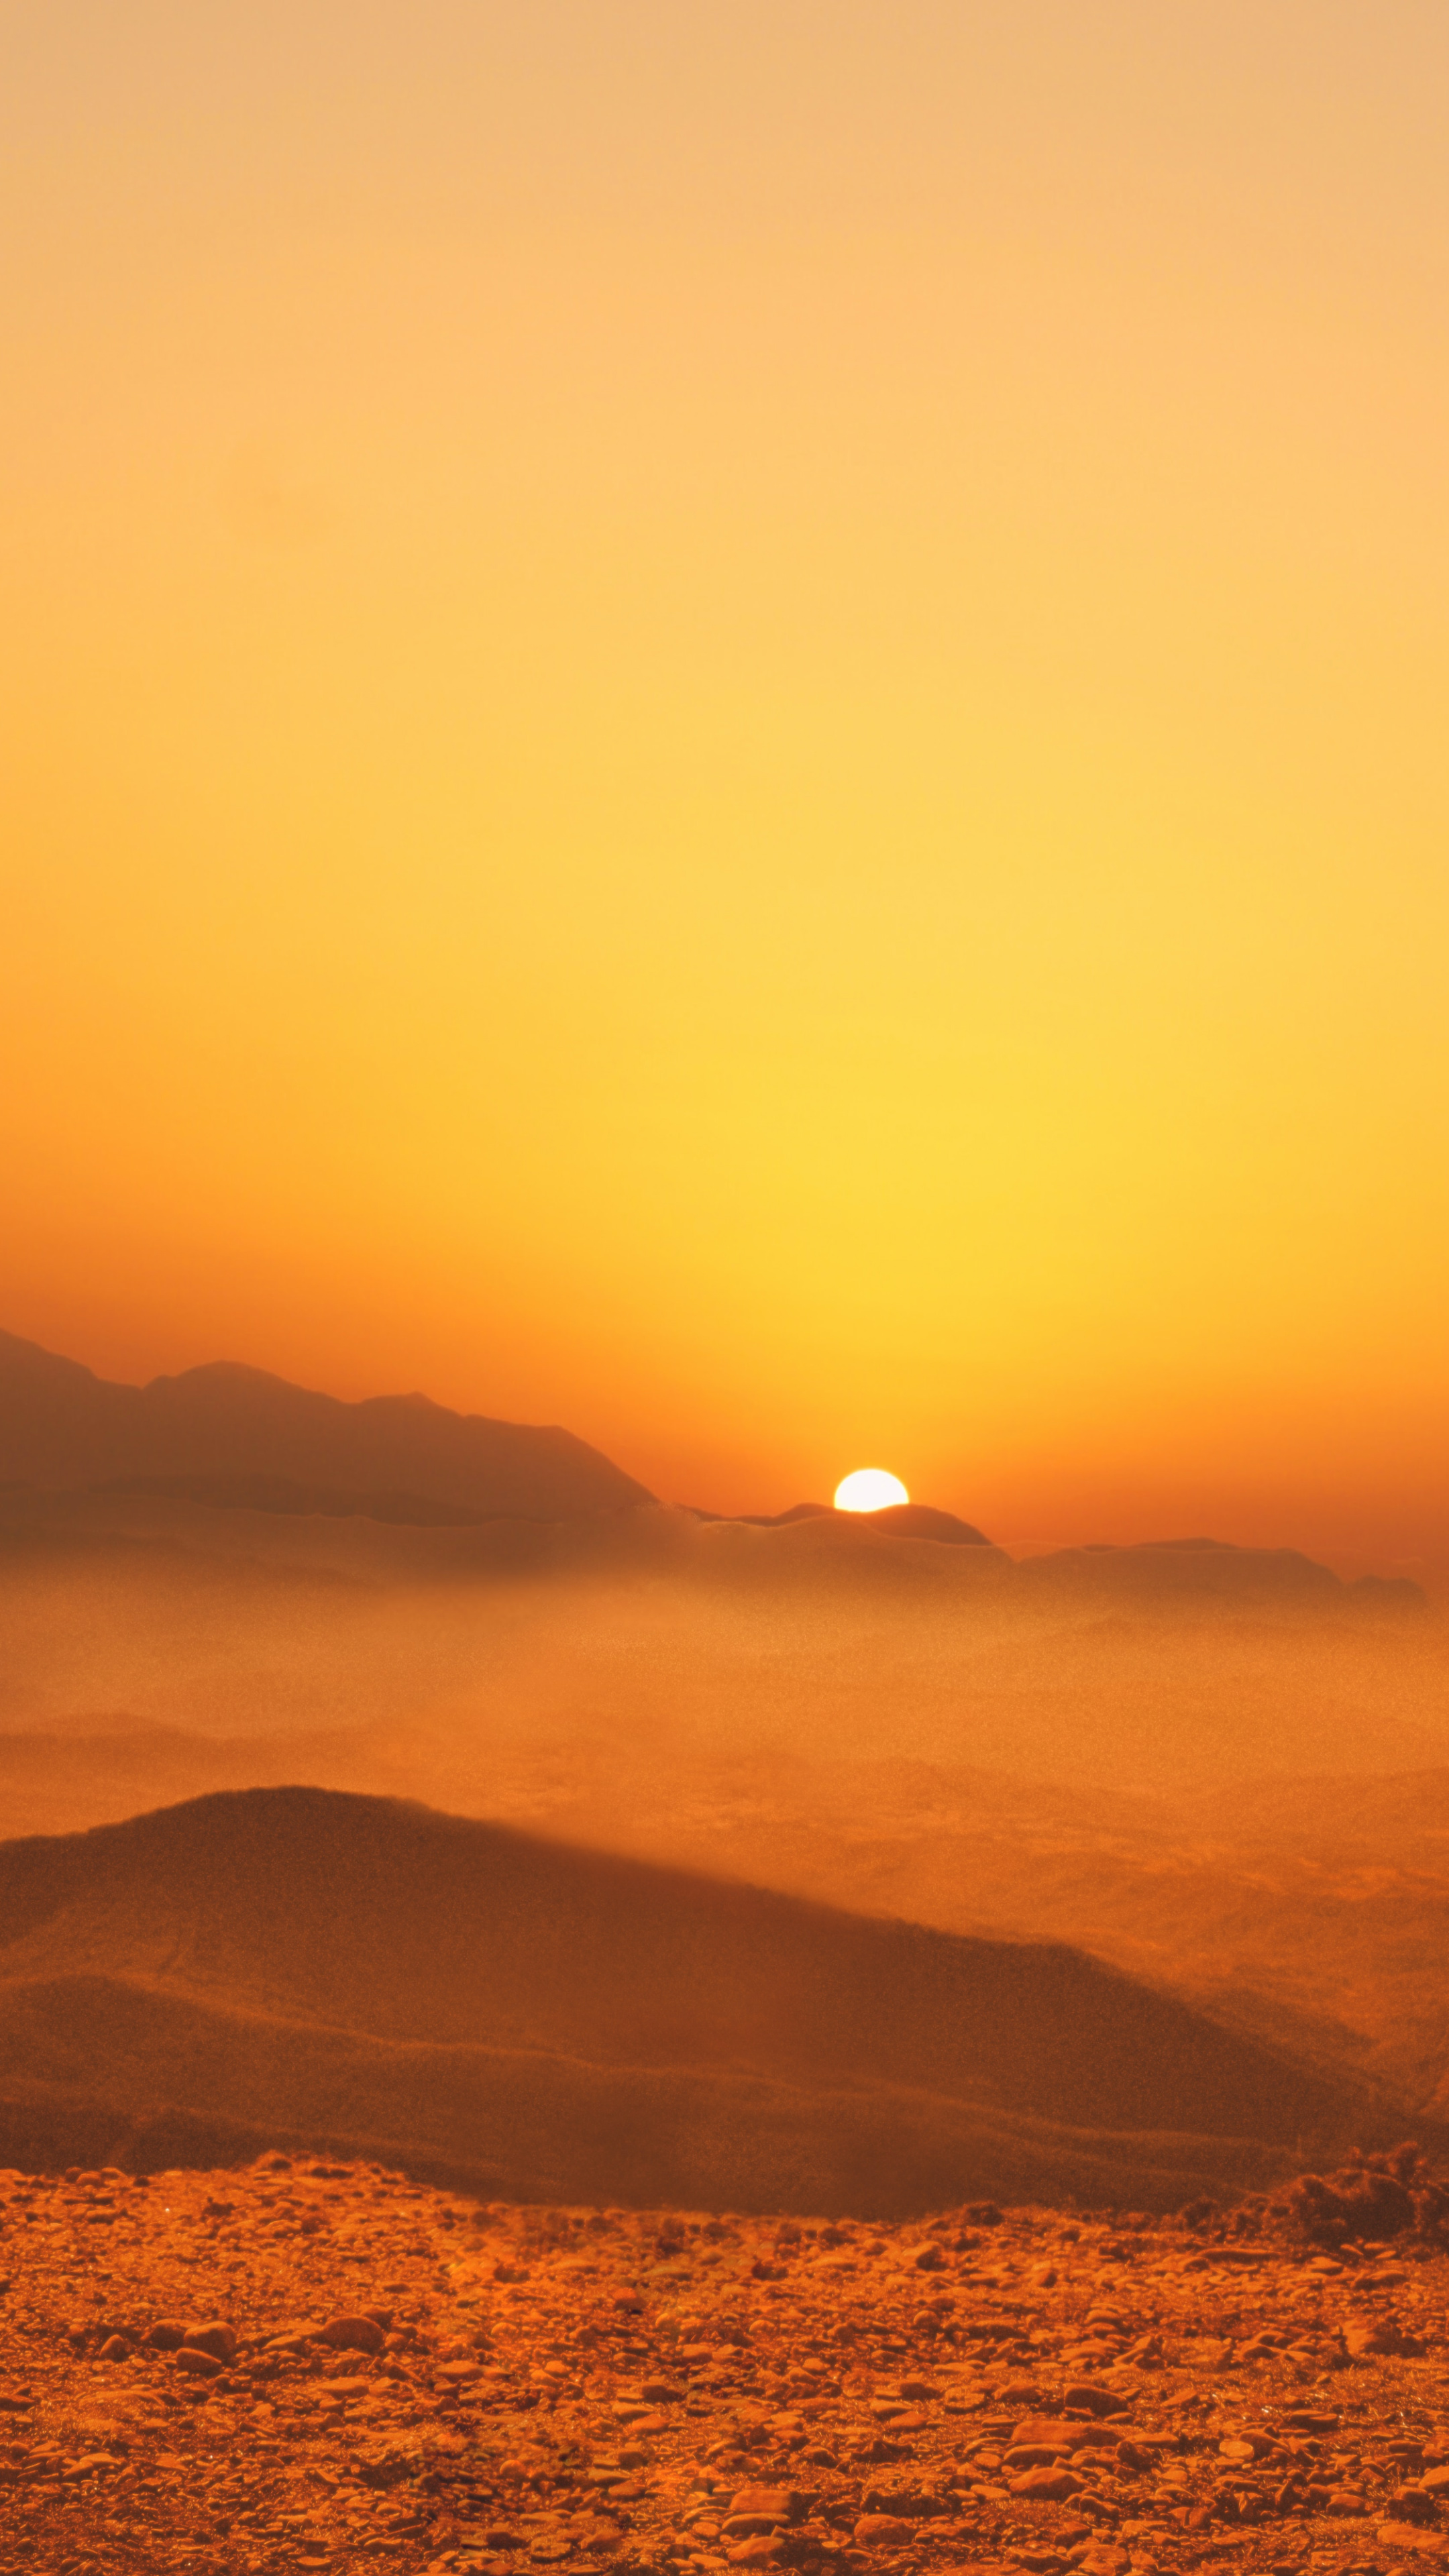 戈壁黄土坡上的日出风景